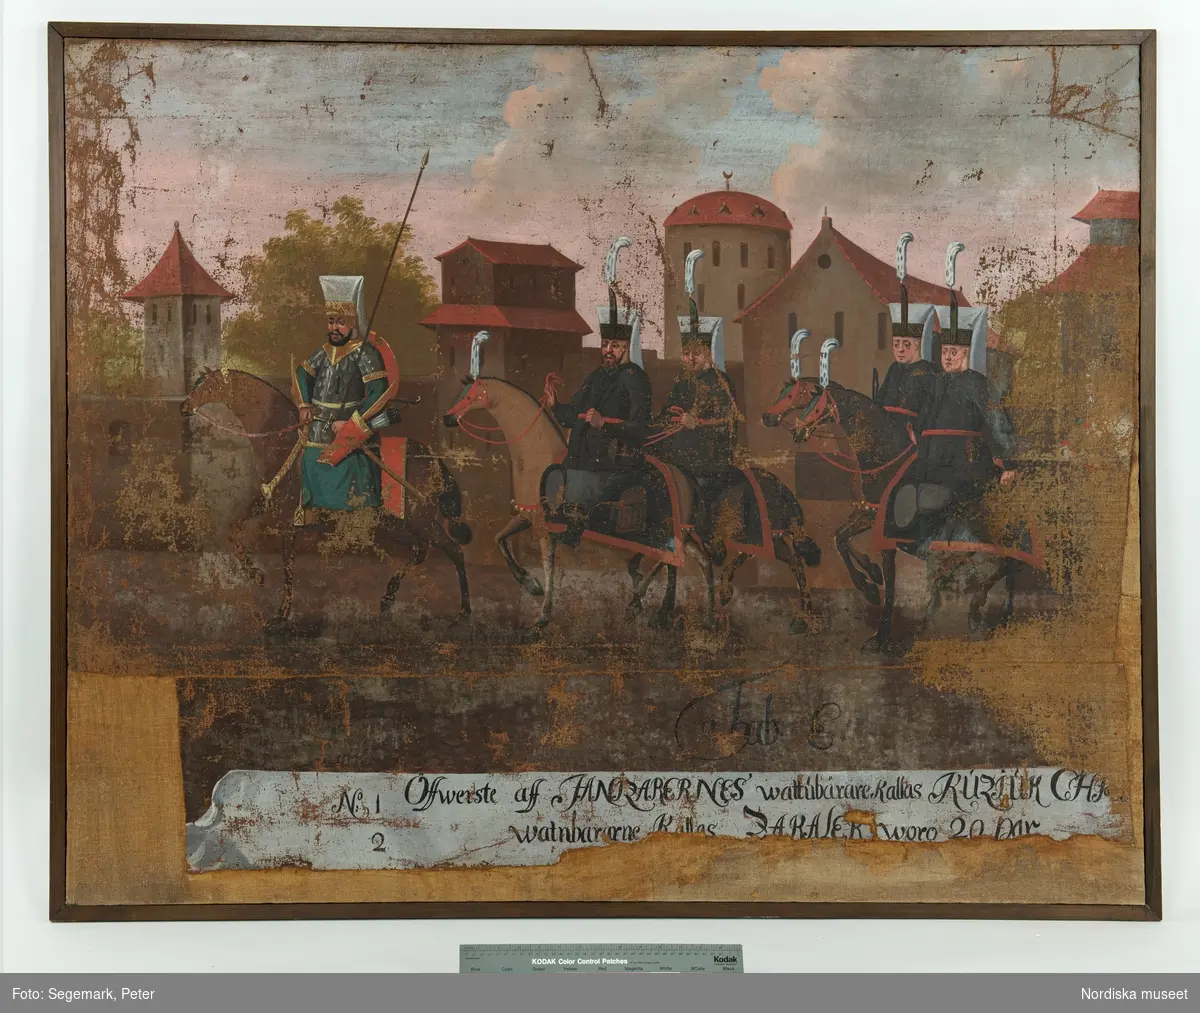 Målning, tavla, Tabula E, processionssvit, en av totalt 20 målningar föreställande en procession genom Konstantinopel (nuvarande Istanbul) med den turkiske sultanen Mehmet IV och hans hov på väg till den årliga höstjakten den 24 september 1657.

Stadsmotiv med byggnader i bakgrunden, procession från höger till vänster i bild. Längst fram en ryttare med hög huvudbonad, pilkoger vid midjan hållande en lång käpp vertikalt. Efter honom fyraridande män med blå rockar och grå byxor. Mannen längst fram markerad med siffran "1", en av de efterföljande männen med siffran "2". Under processionen texten "Tab.E." Längst ned textremsa med texten: "No  1 Öffwerste aff ZANIZARERNES wattubärare Kallas KUZJUK CHJ---
No  2  Watnbärarne Kallas ZAKALER woro 20 par".

Anm.
Skador längs kortsidor och nedre långsida, se konserveringsprotokoll.
/Maria Maxén 2014-08-15